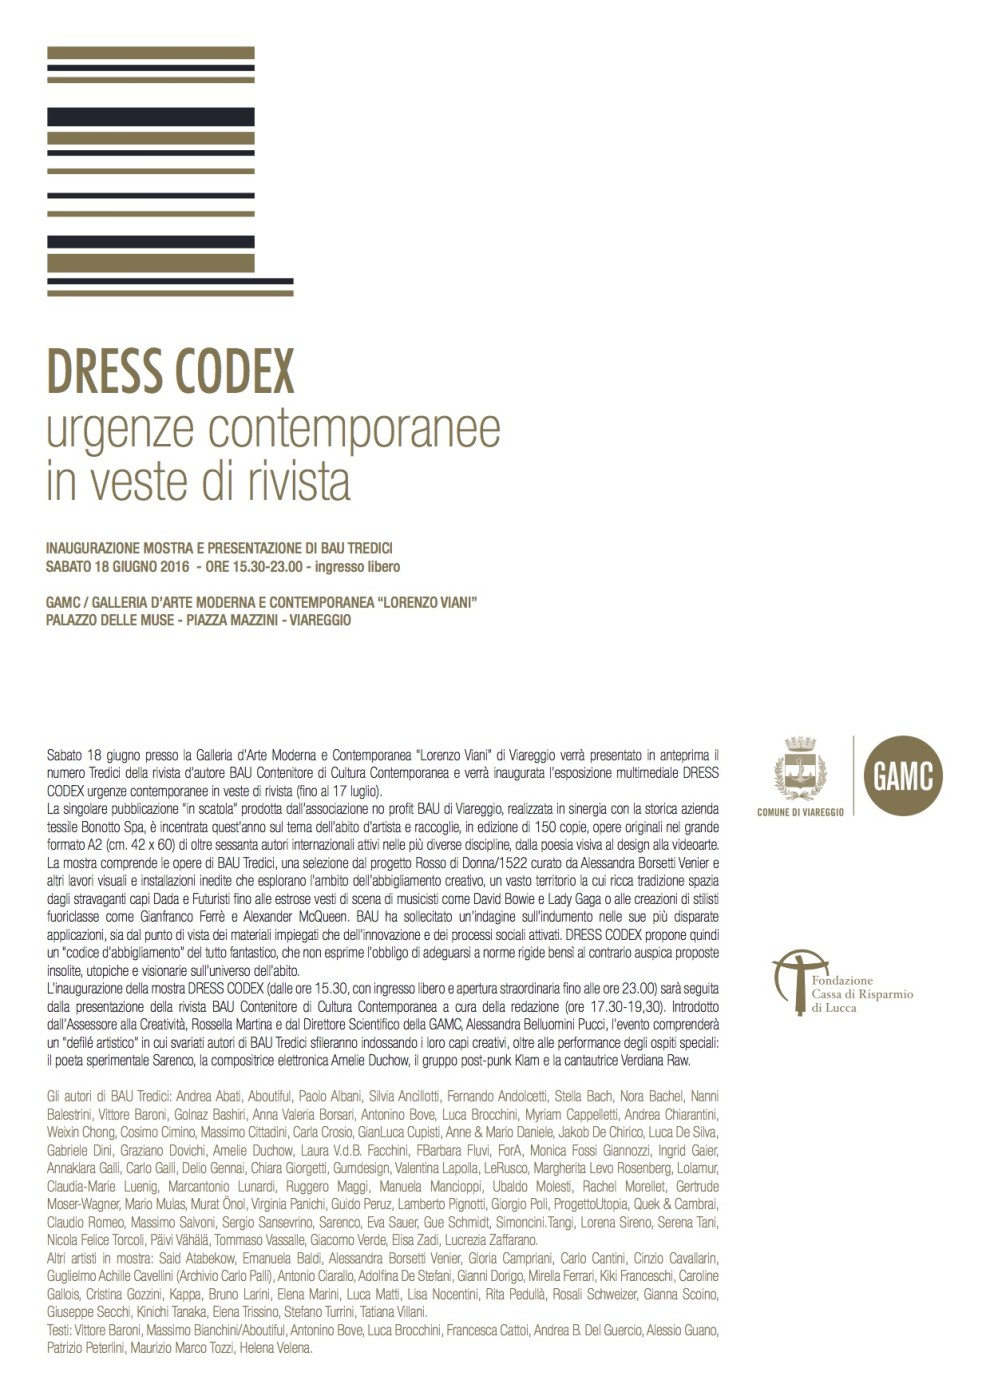 comunicato stampa - Dress Codex - GAMC Viareggio 18 giugno 2016